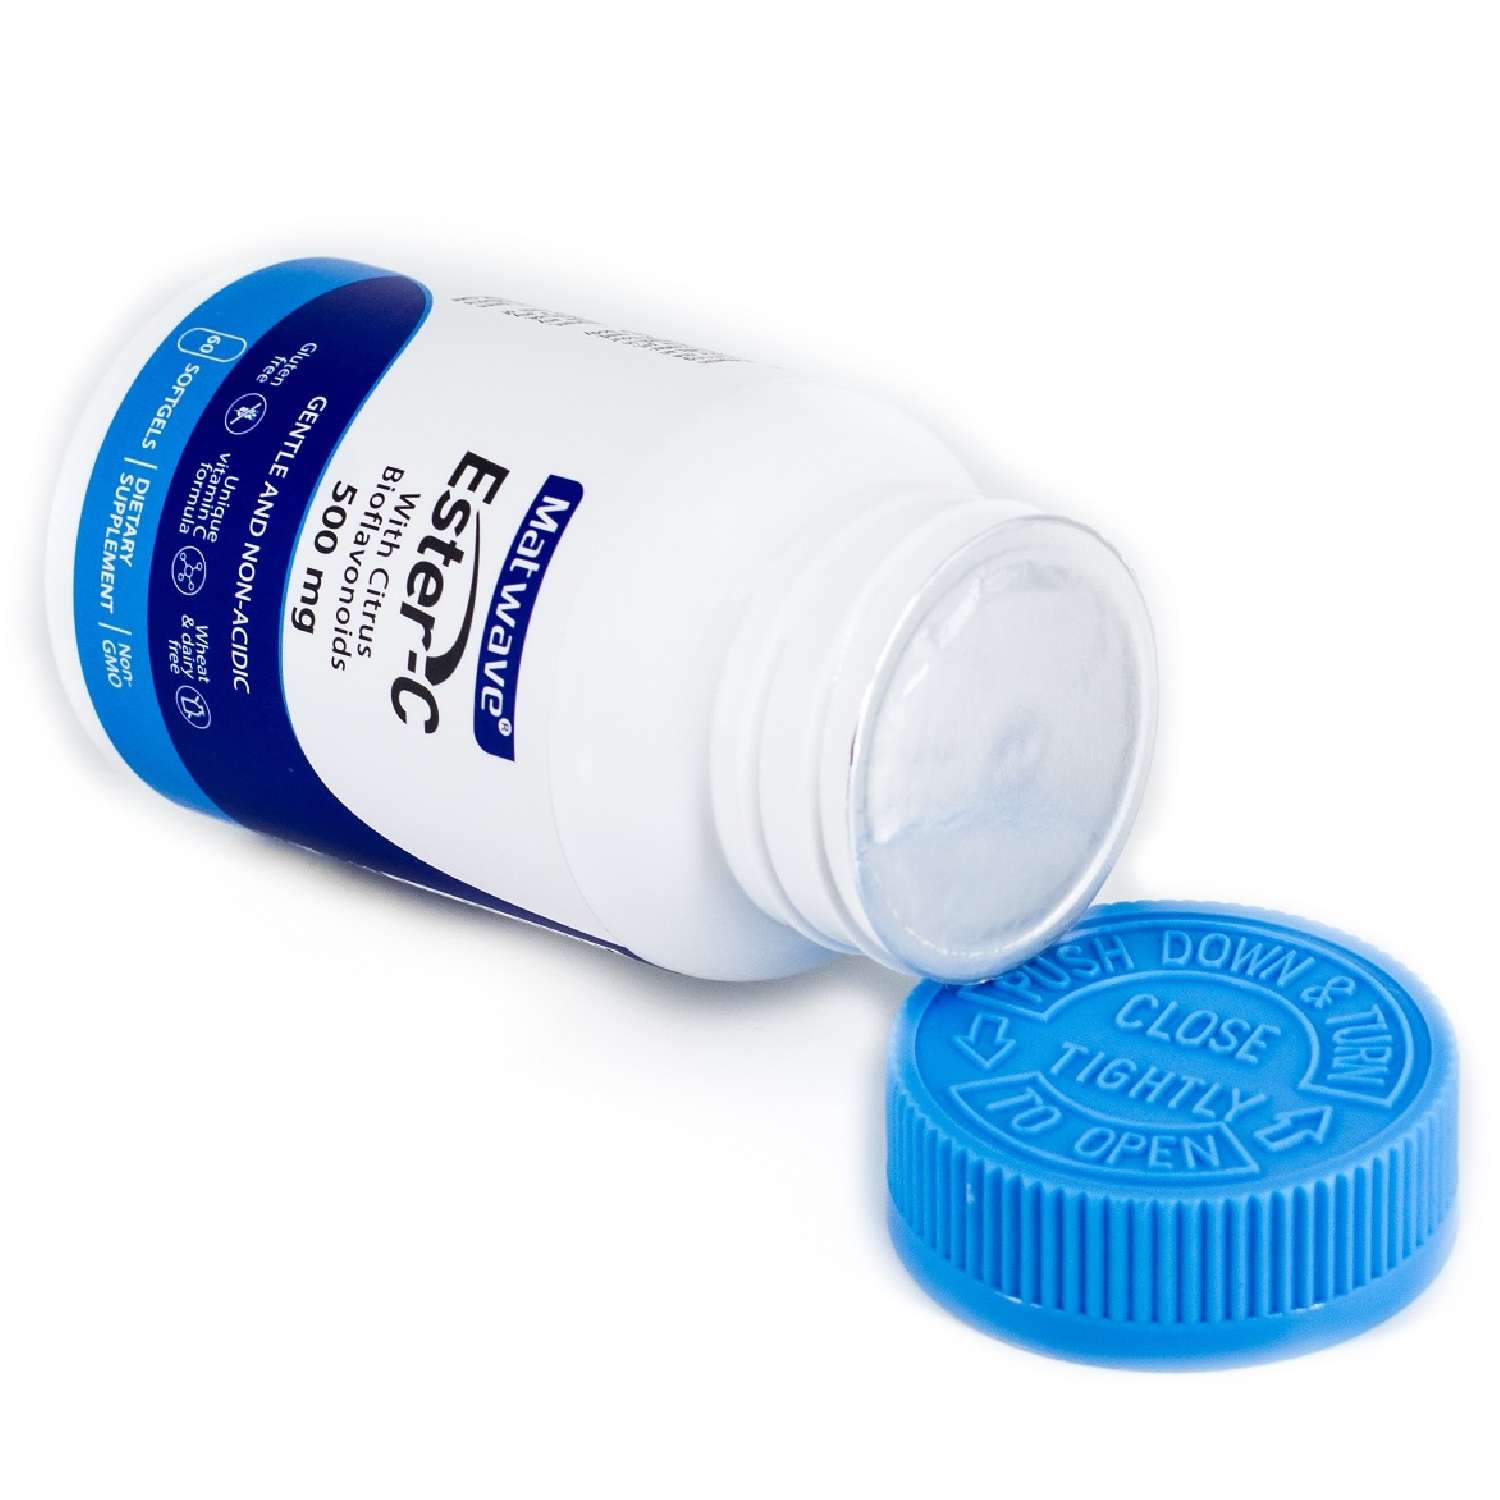 Витамин С Matwave Ester-C Эстер С 500 mg 60 капсул комплект 2 упаковки - фото 12